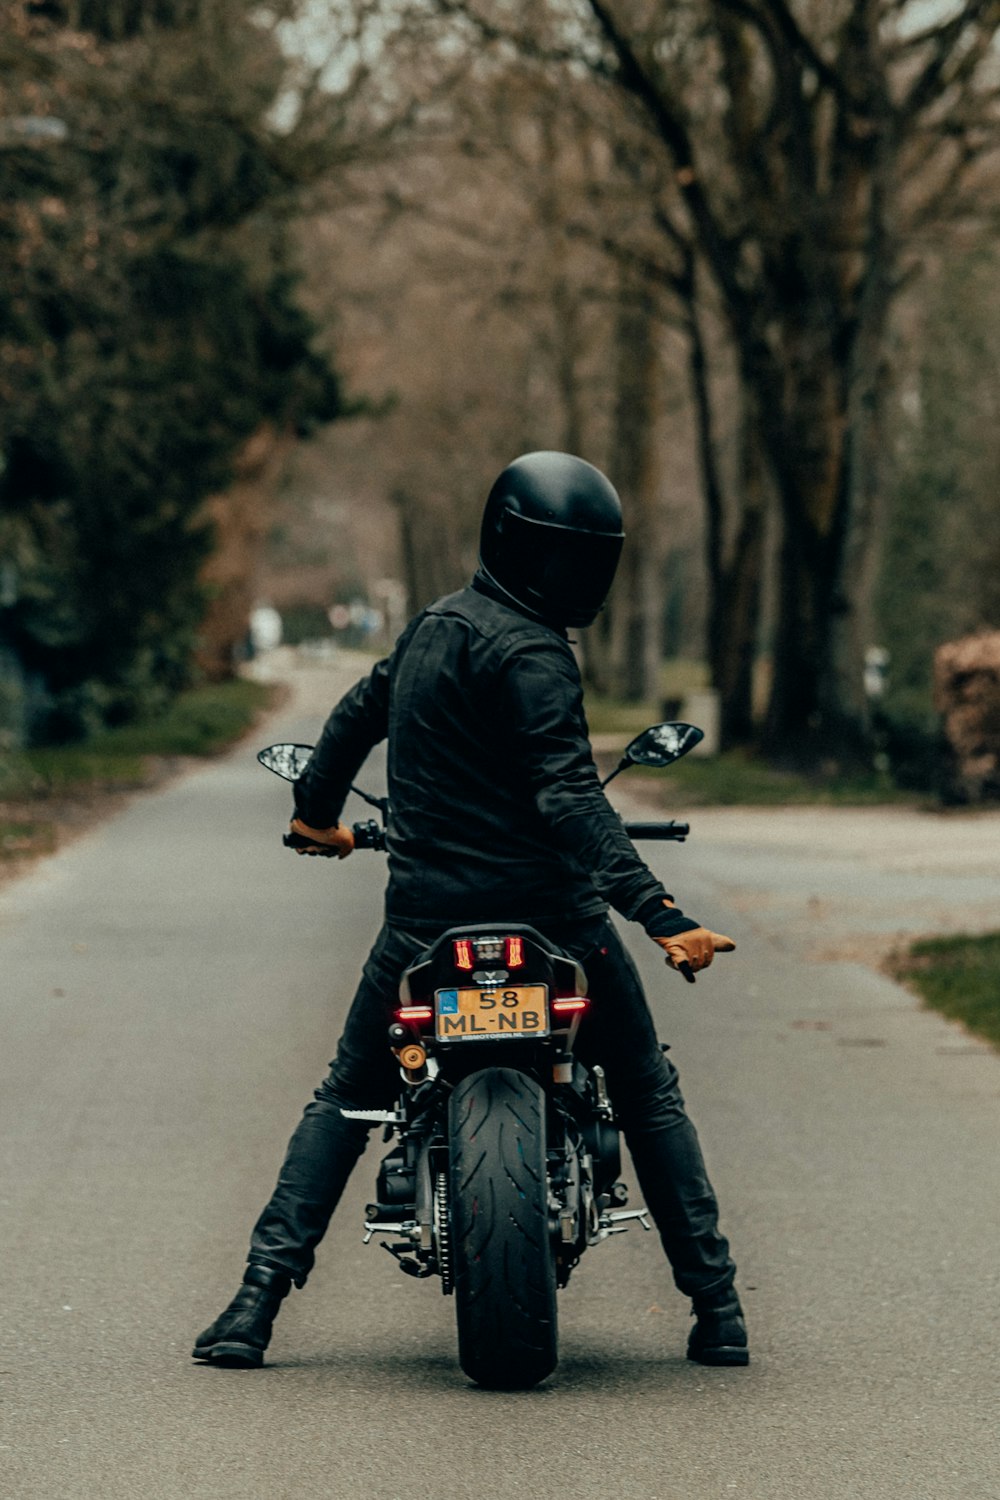 검은 가죽 재킷을 입은 남자가 낮 동안 도로에서 오토바이를 타고